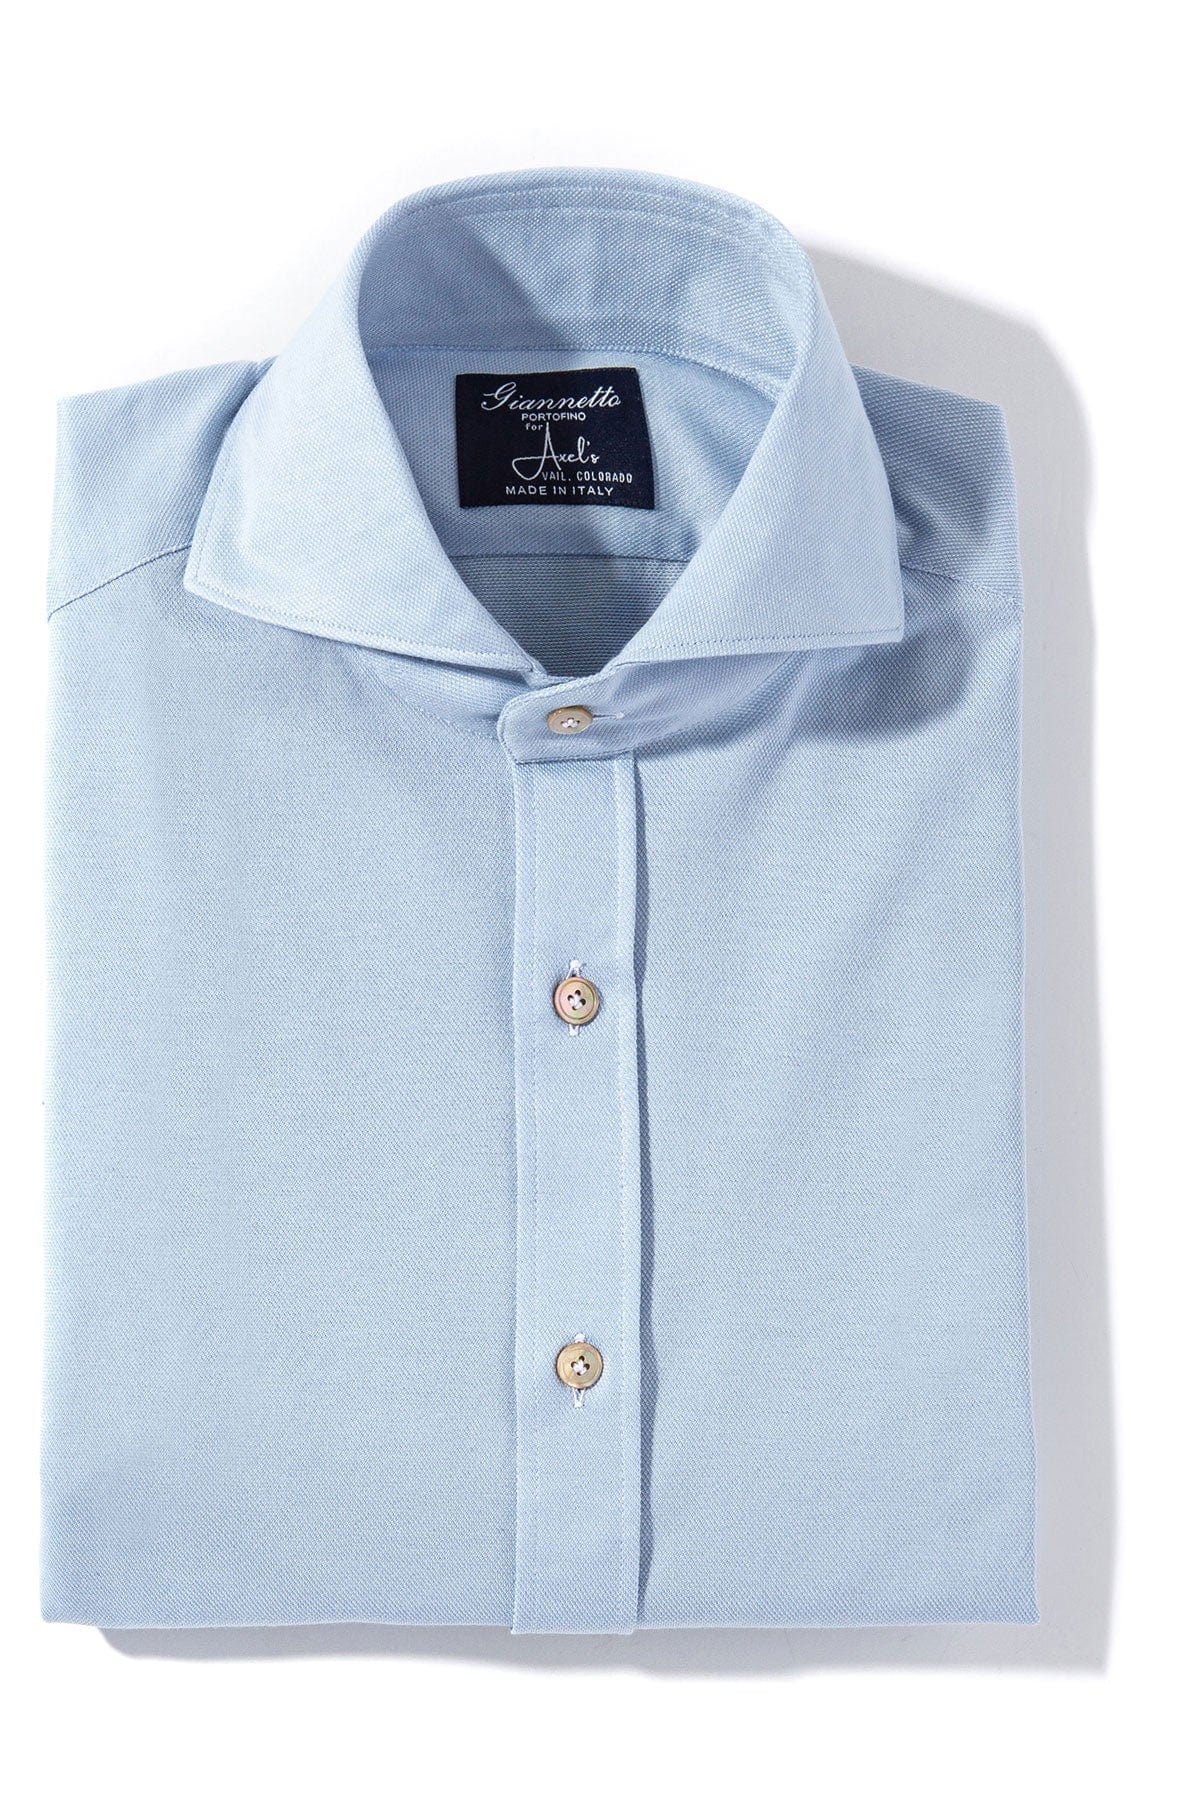 Menerbes Jersey Shirt in Light Blue - AXEL'S